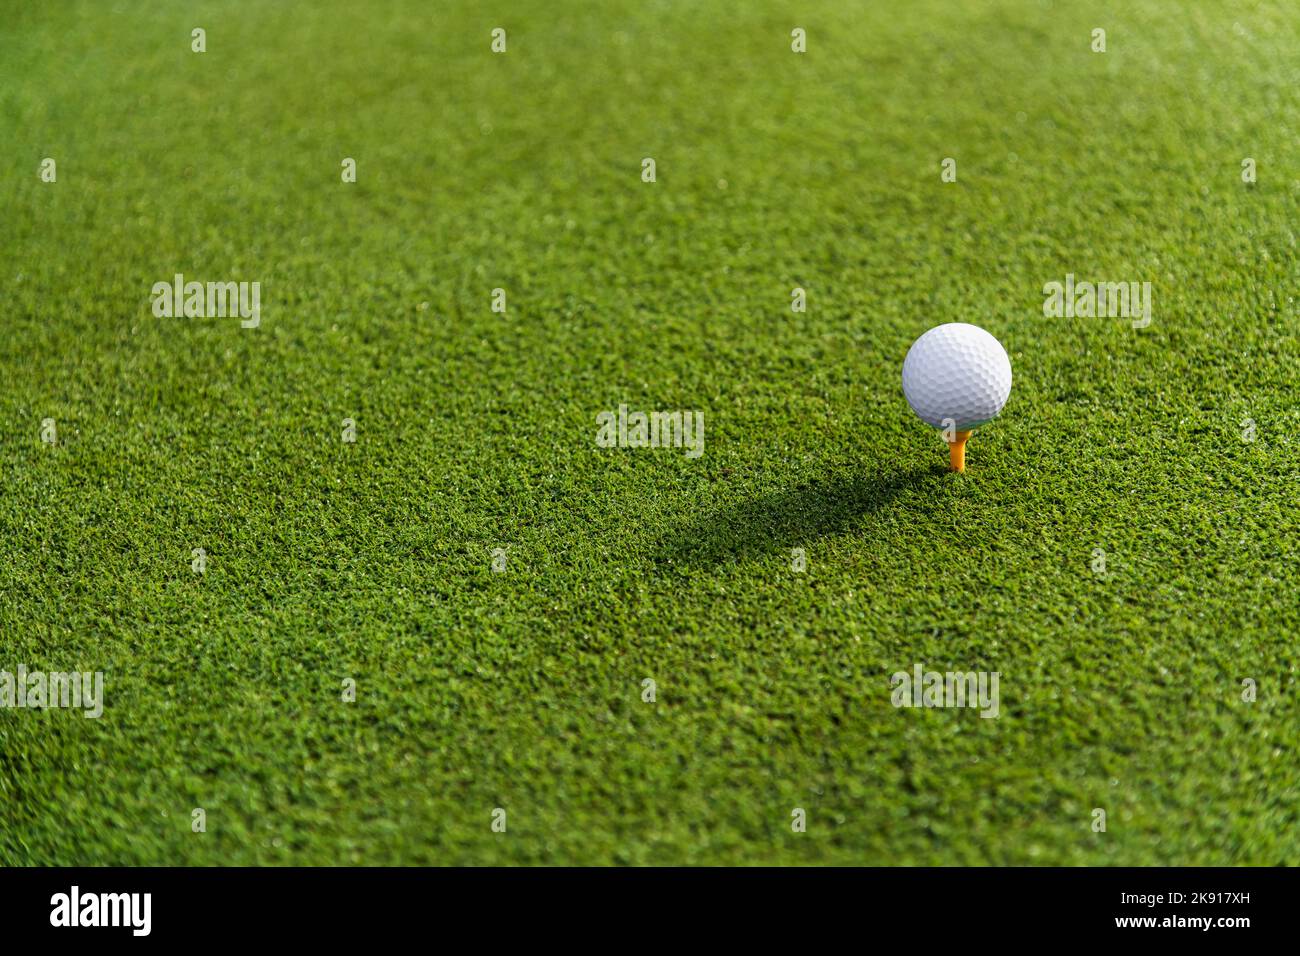 Minimalista verde hierba de oro exuberante campo con pequeña bola blanca en el tee antes del swing Foto de stock